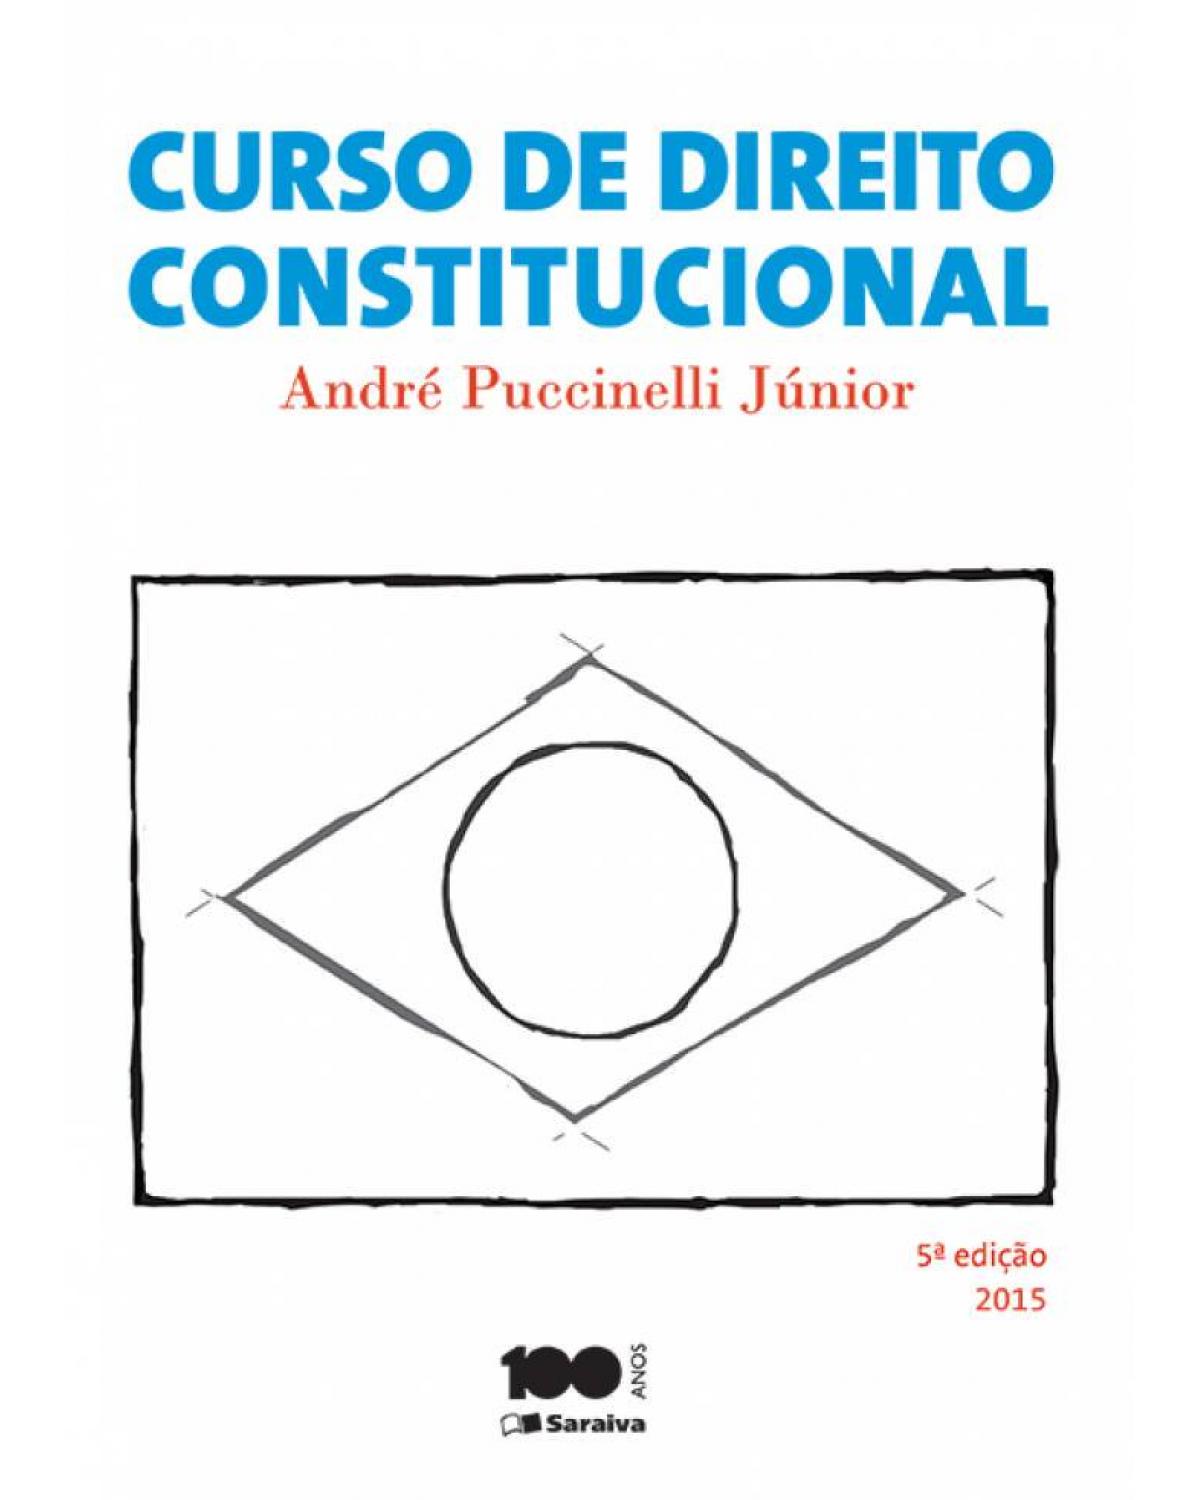 Curso de direito constitucional - 5ª Edição | 2015